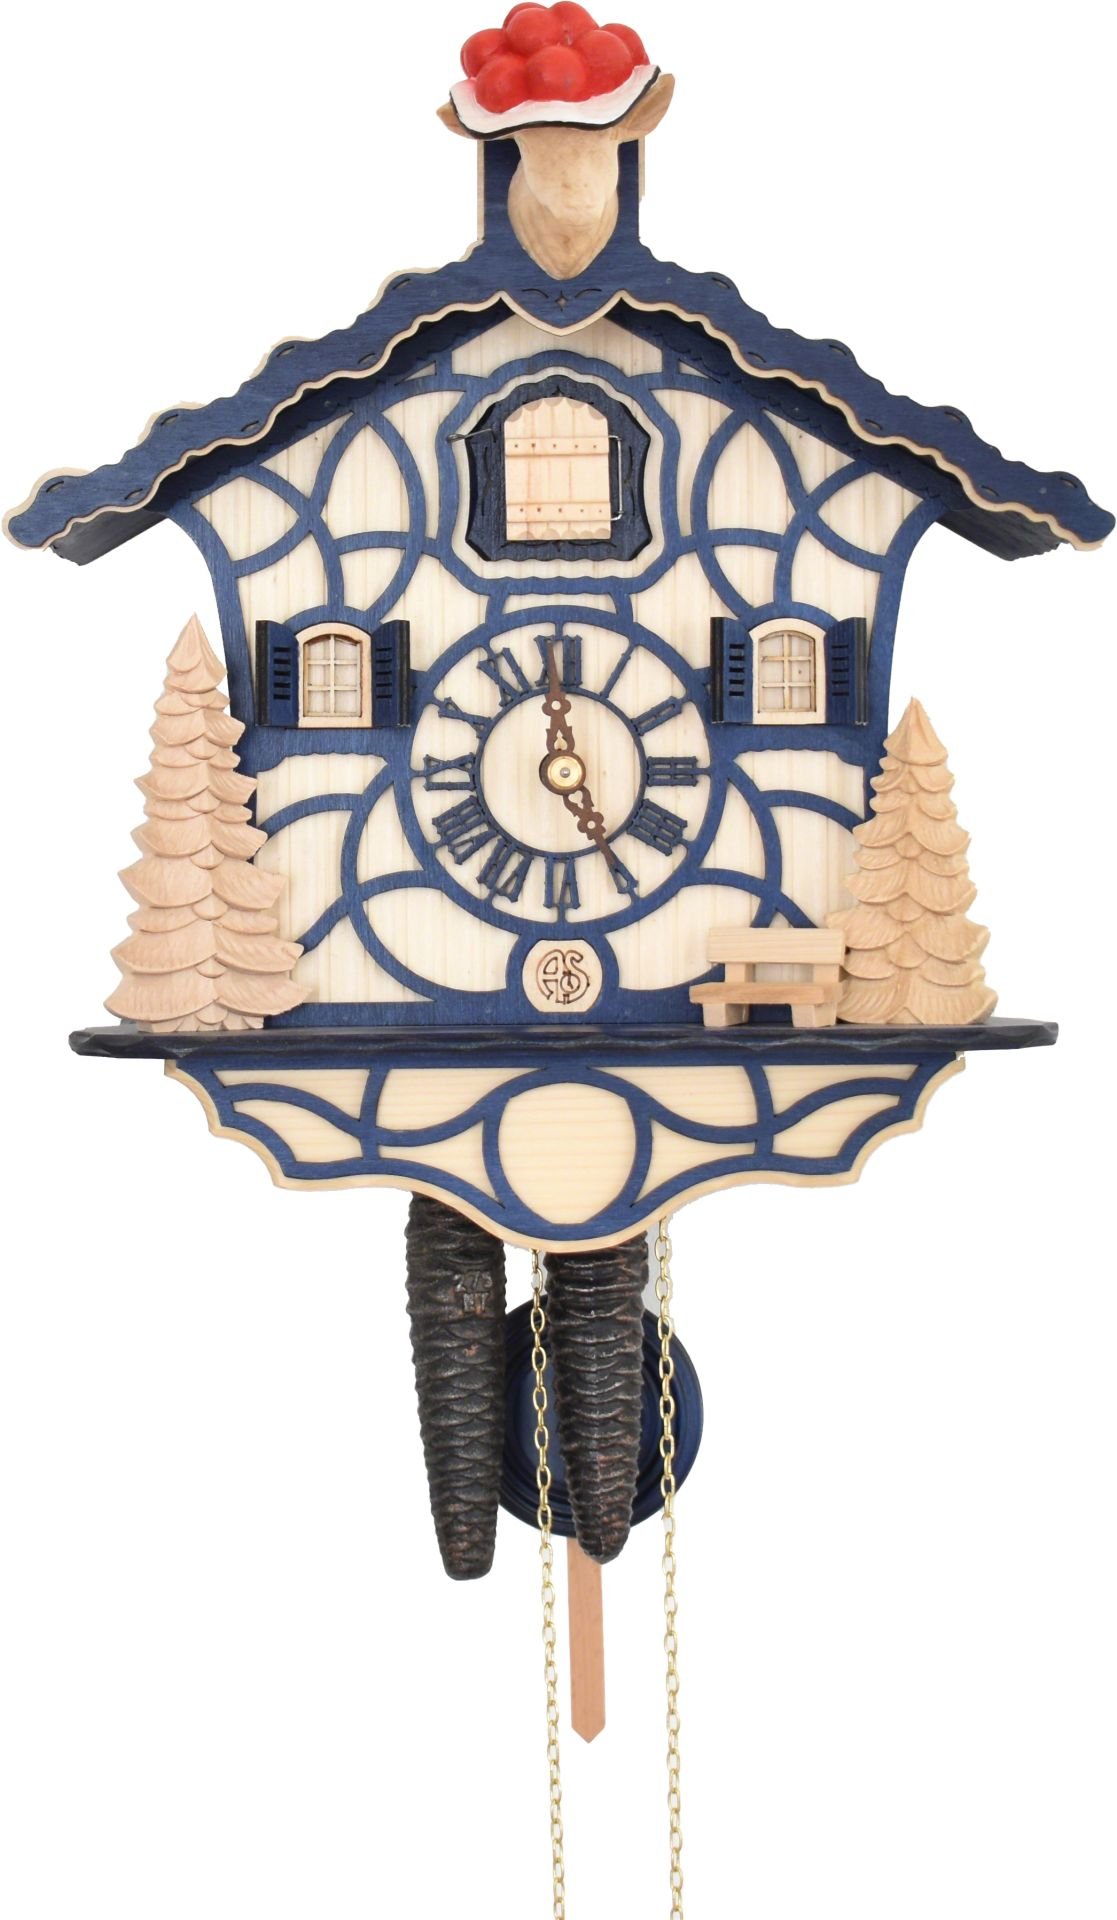 Orologio cucu chalet meccanismo giornaliero 30cm di Anton Schneider